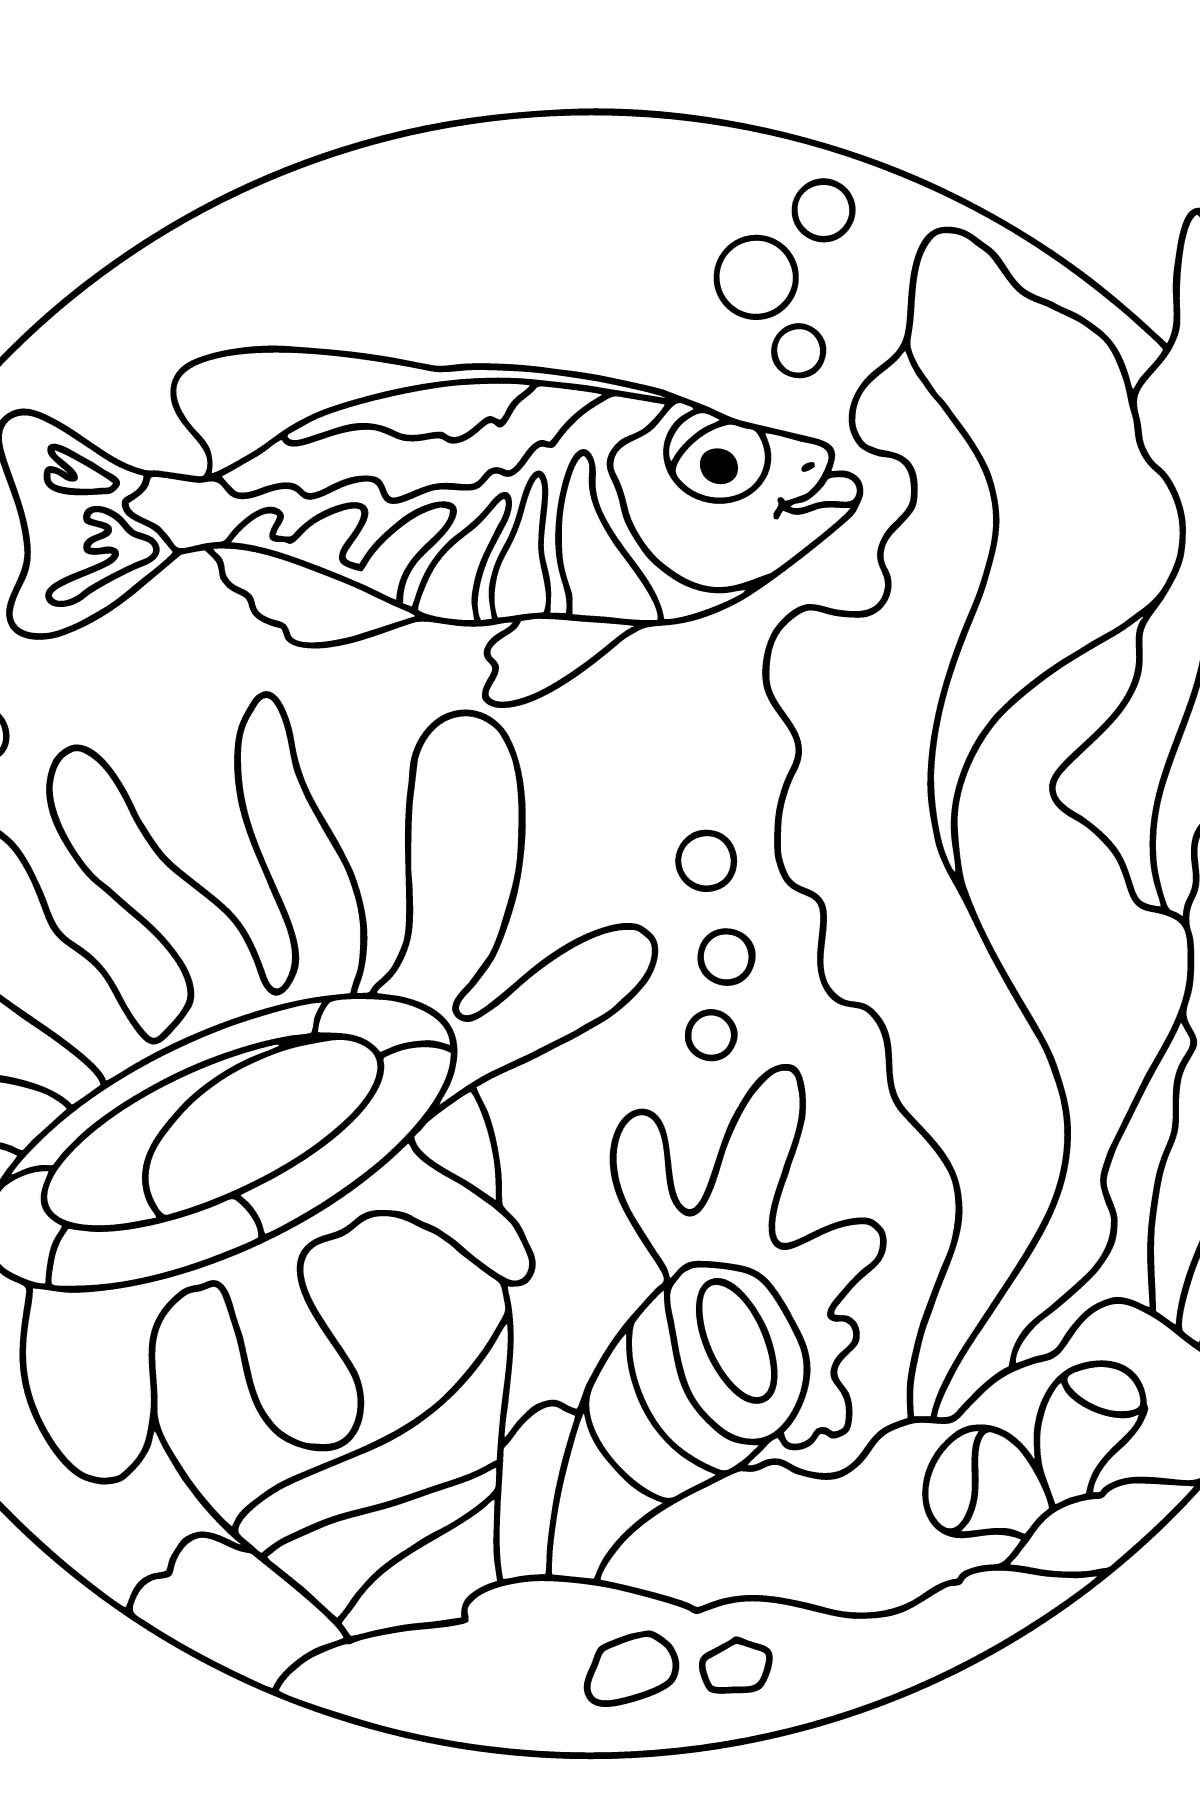 Desenho de peixe para colorir (difícil) - Imagens para Colorir para Crianças